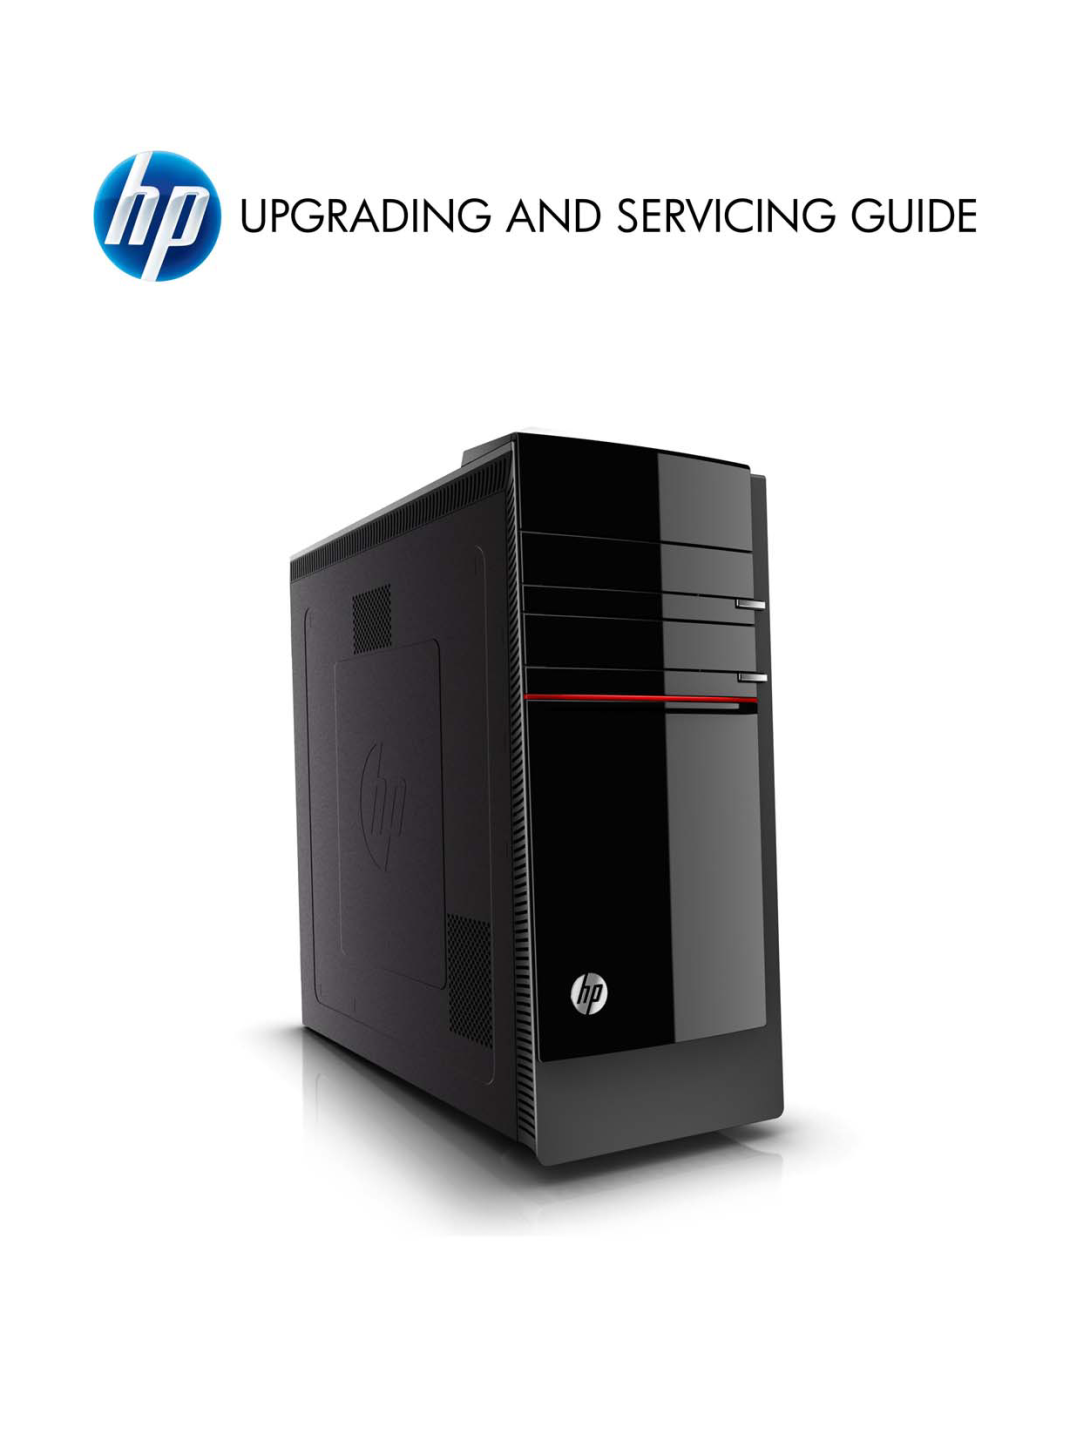 HP 500-016, 500-017c manual Operating Specifications, Betriebsdaten, Fiche technique, Especificaciones de funcionamiento 